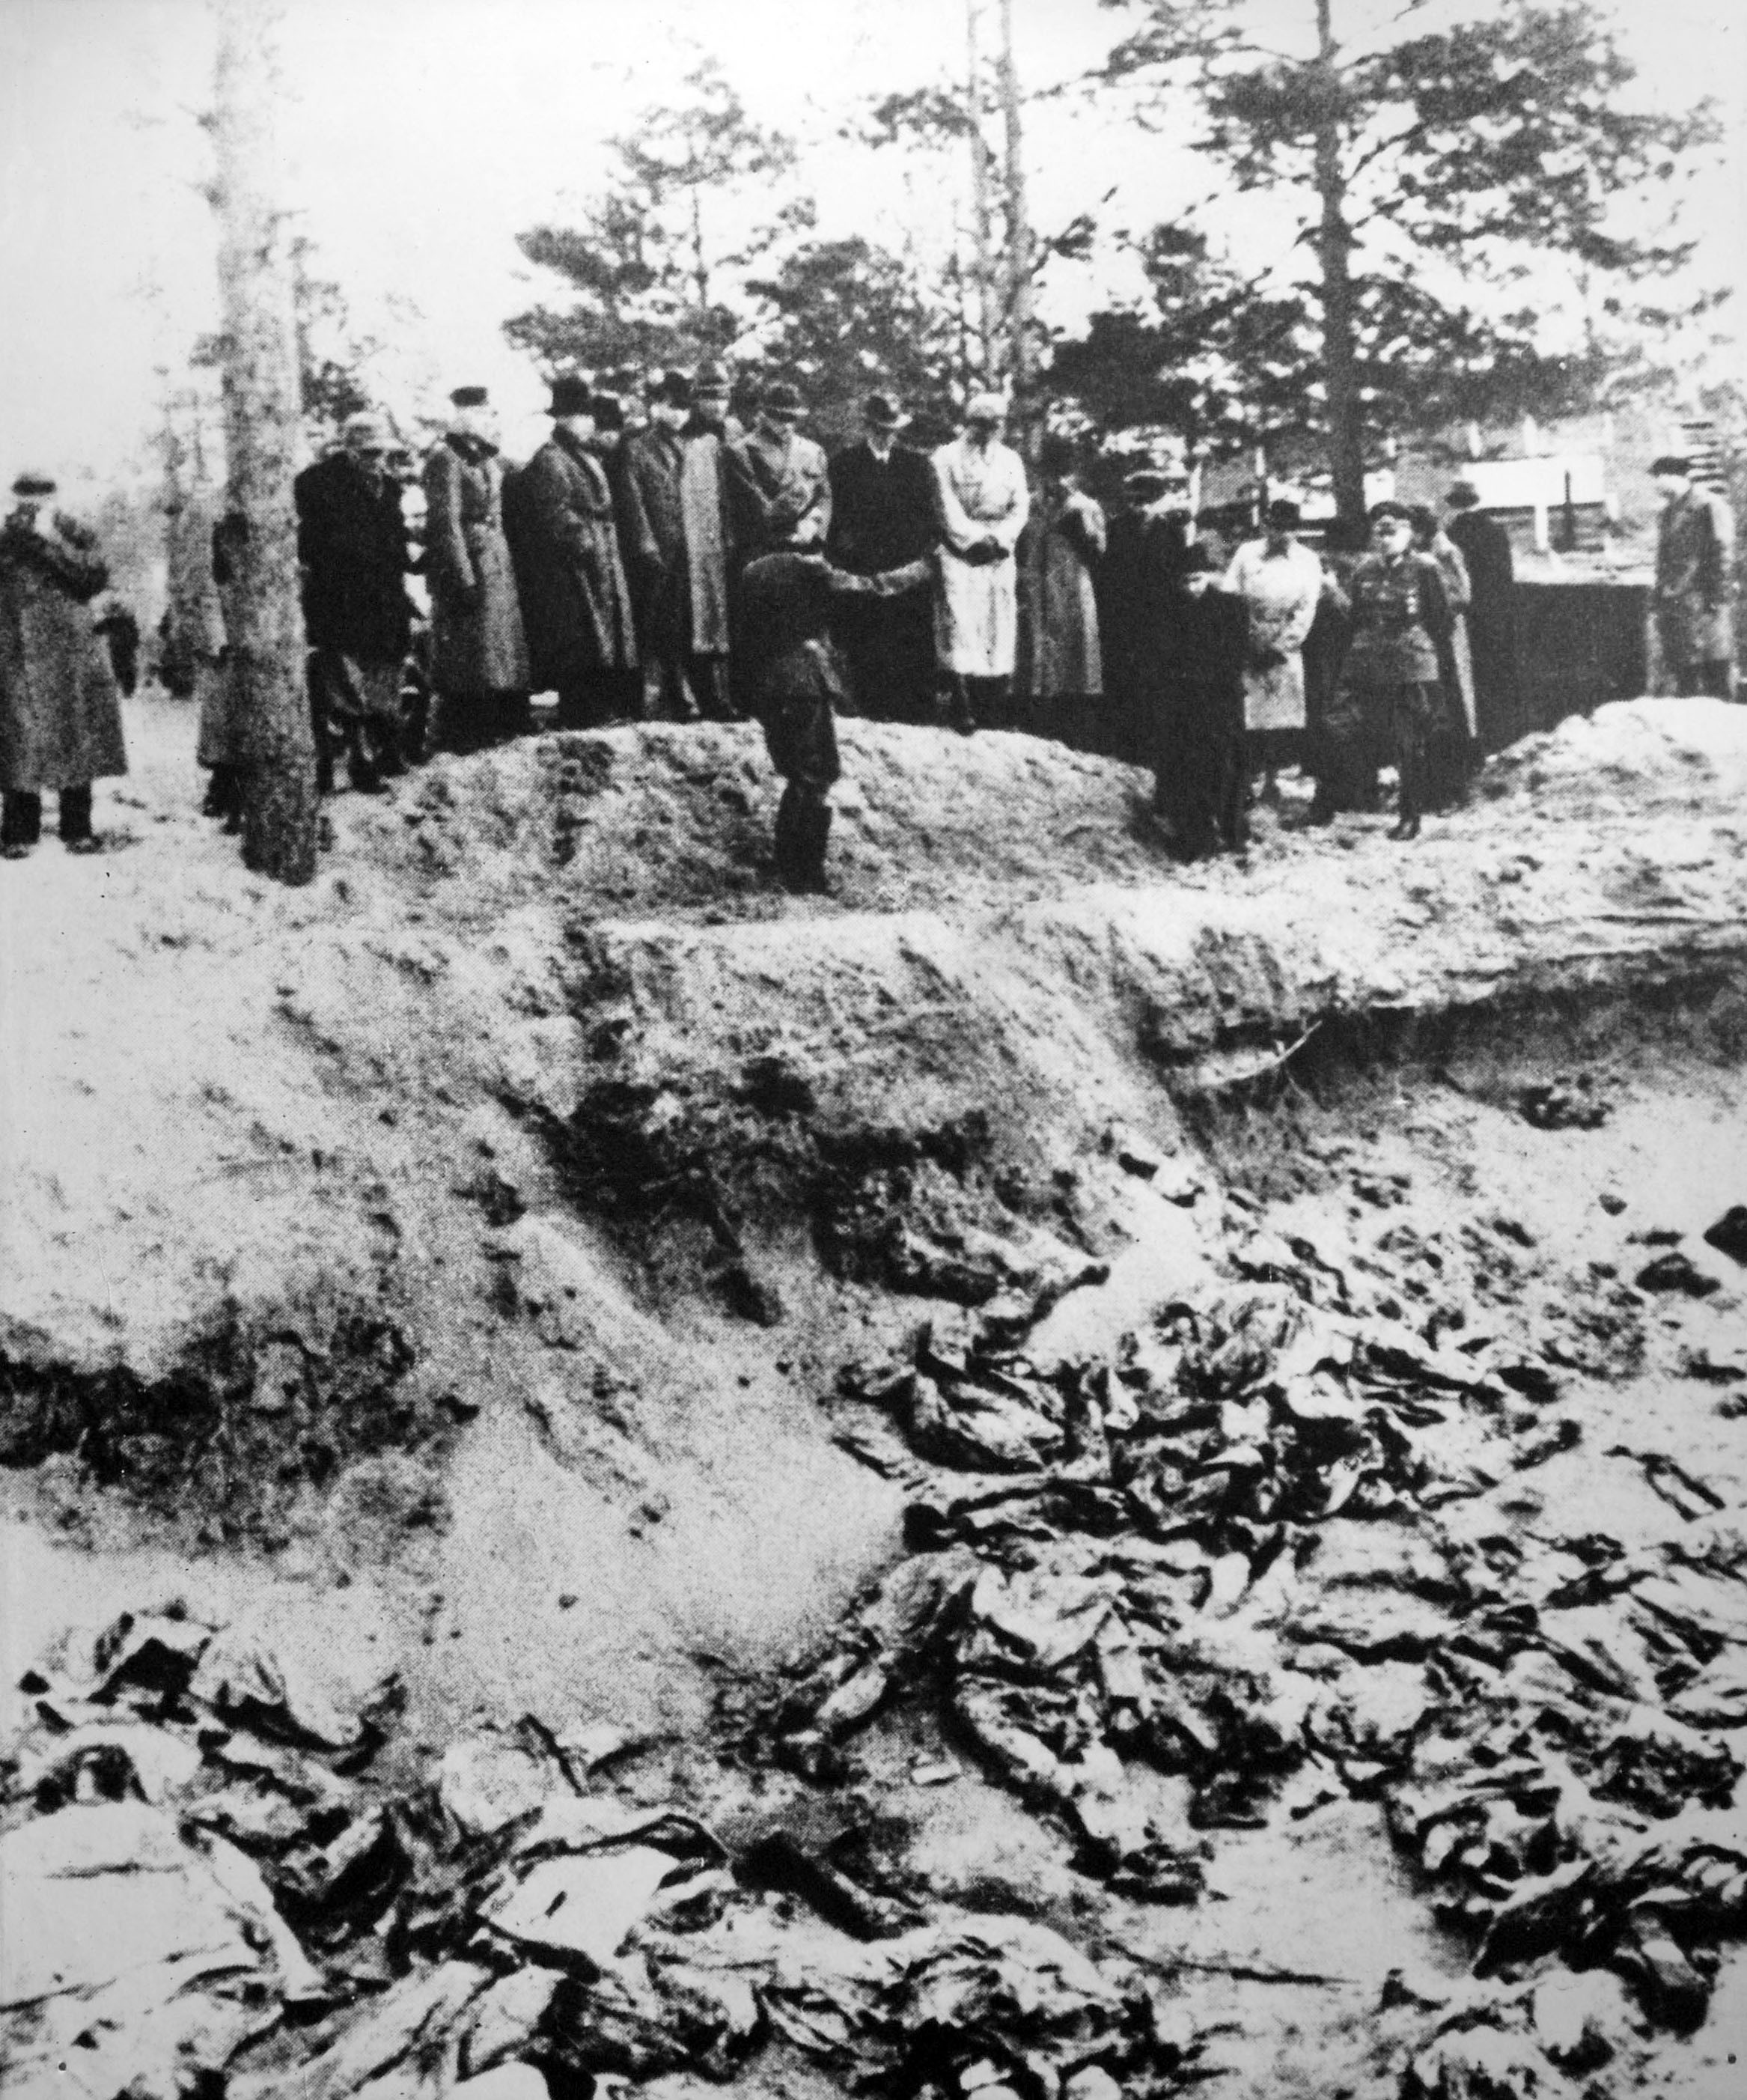 El bosque de Katyn, adonde fueron enterrados 21 mil soldados polacos en fosas comunes, se encuentra cerca de Smolensk, Rusia (Wojtek Laski/Getty Images)